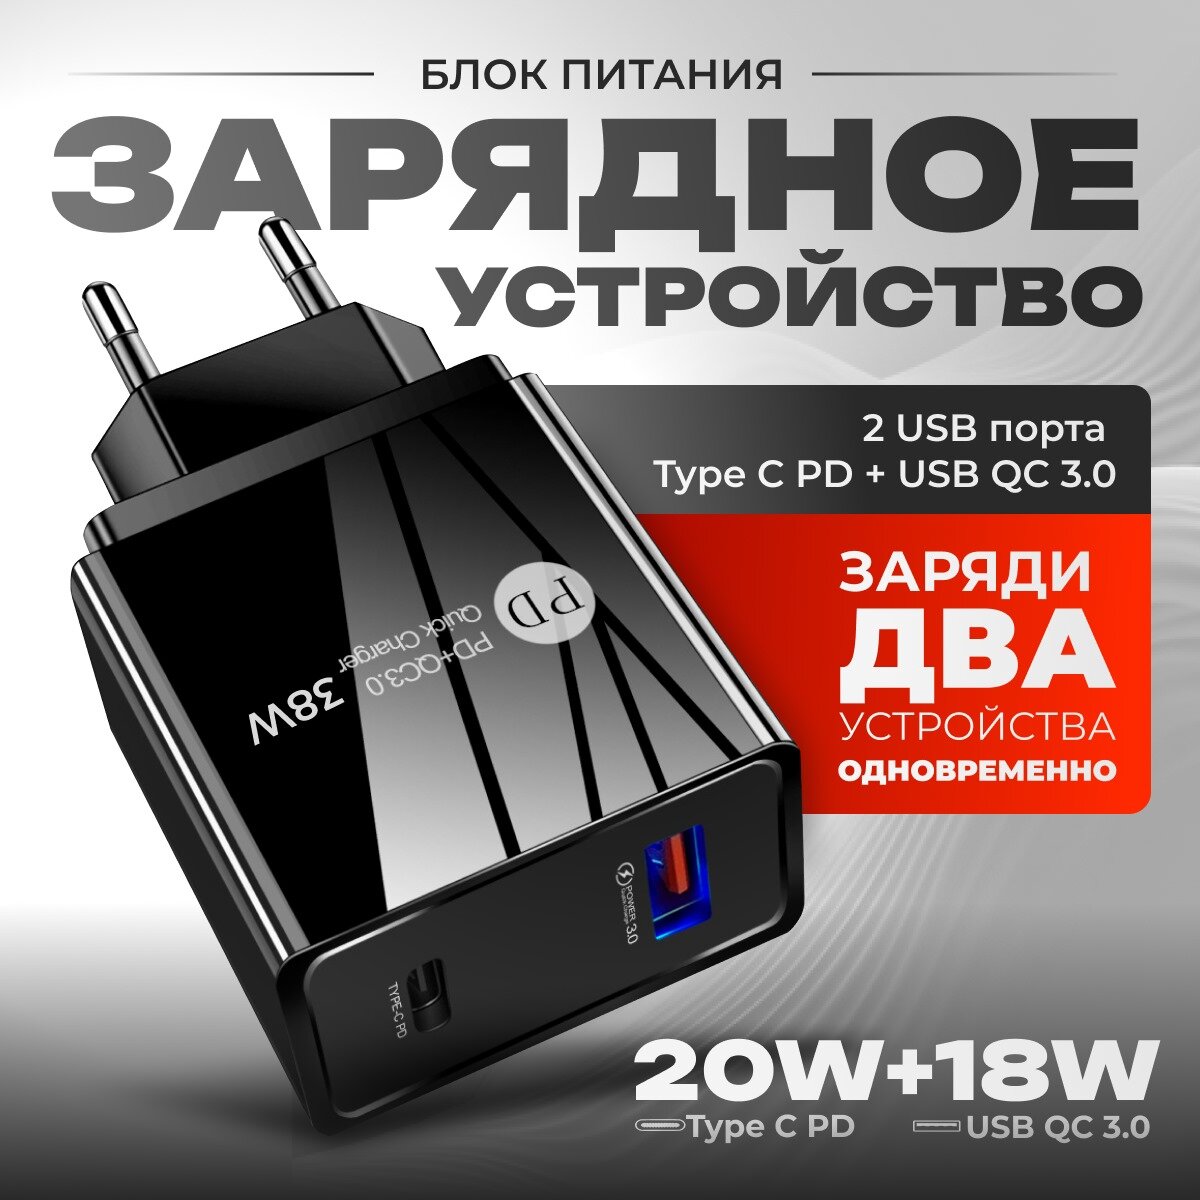 Сетевая зарядка для телефона, Type C + USB 3.0, зарядное устройство, черная